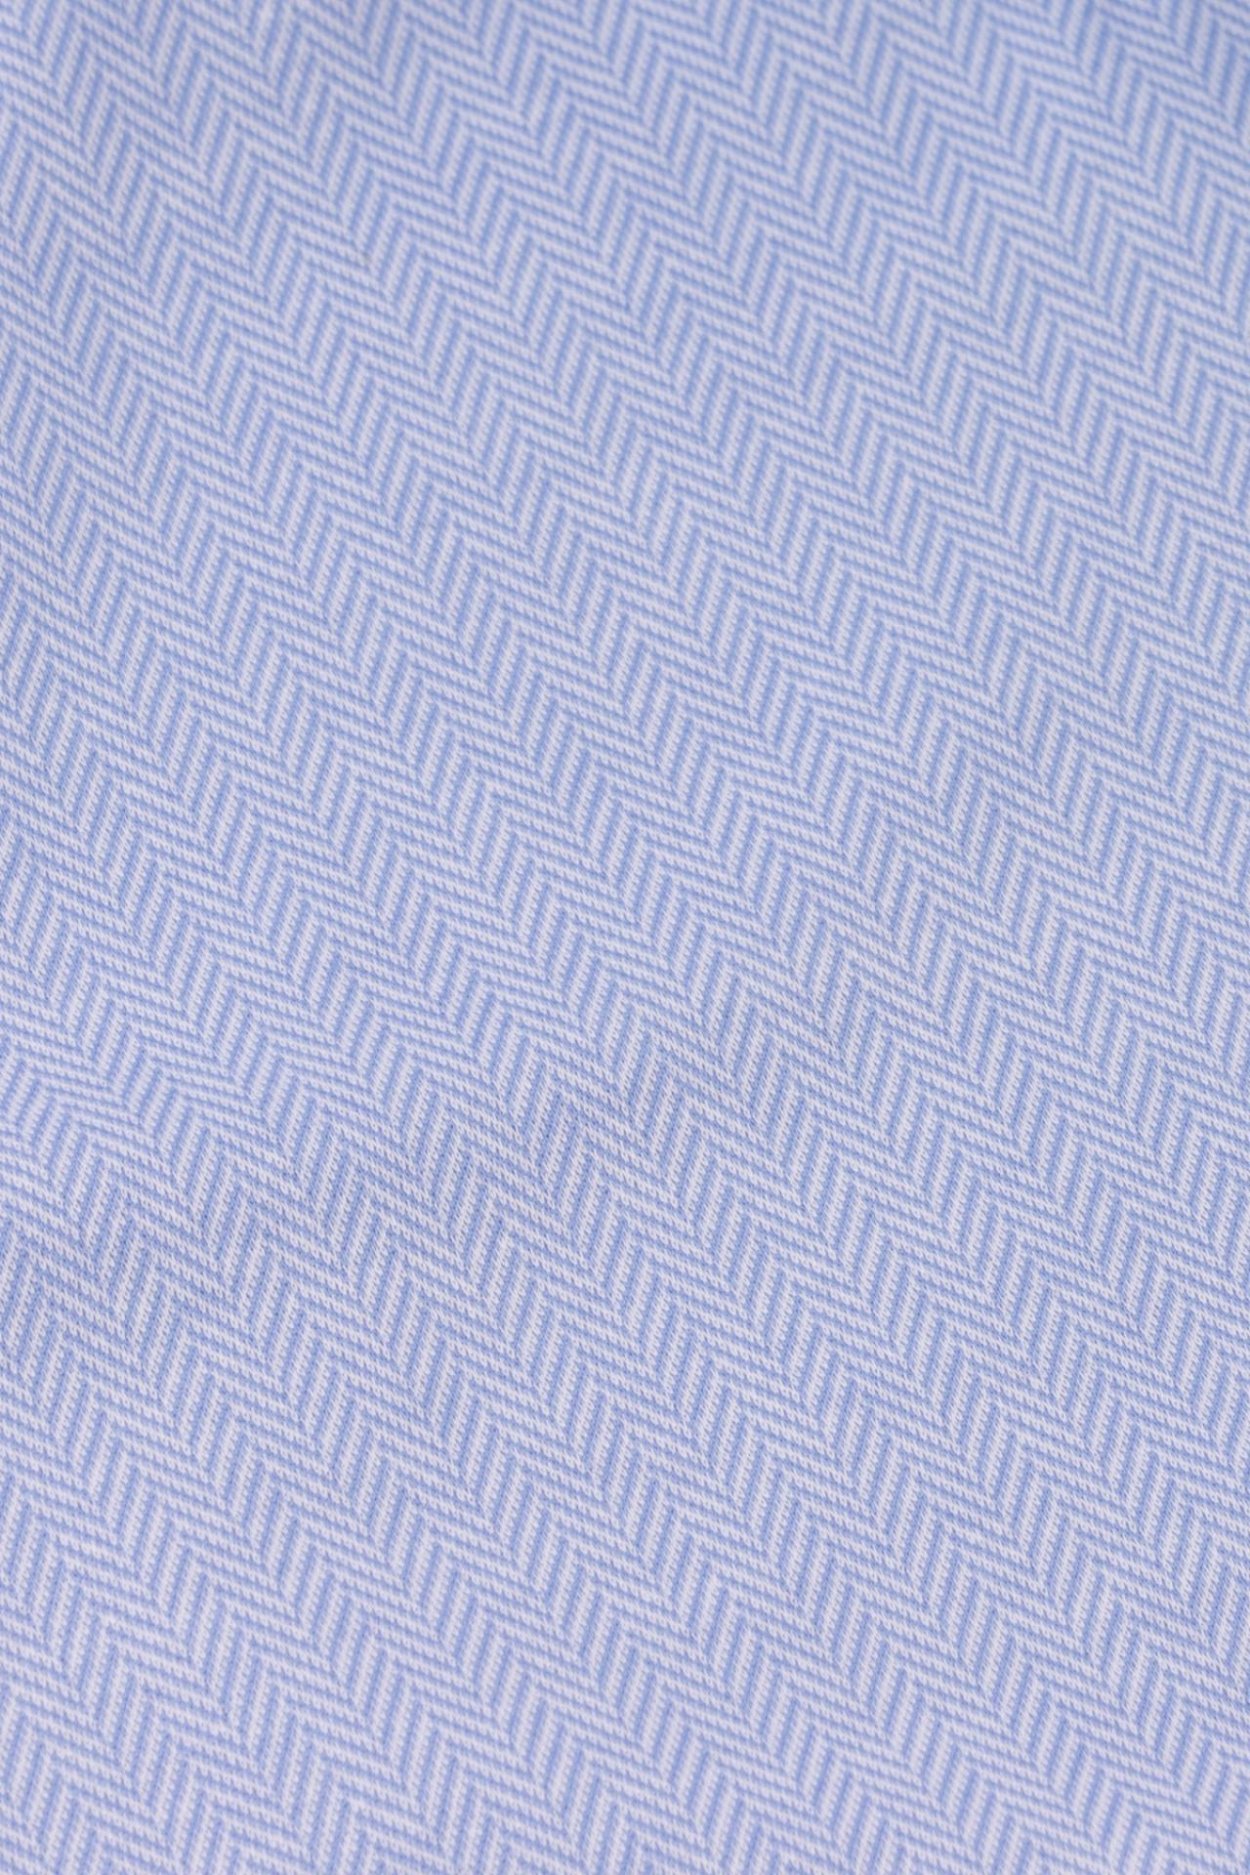 Pánská světle modrá košile s jemným vzorem